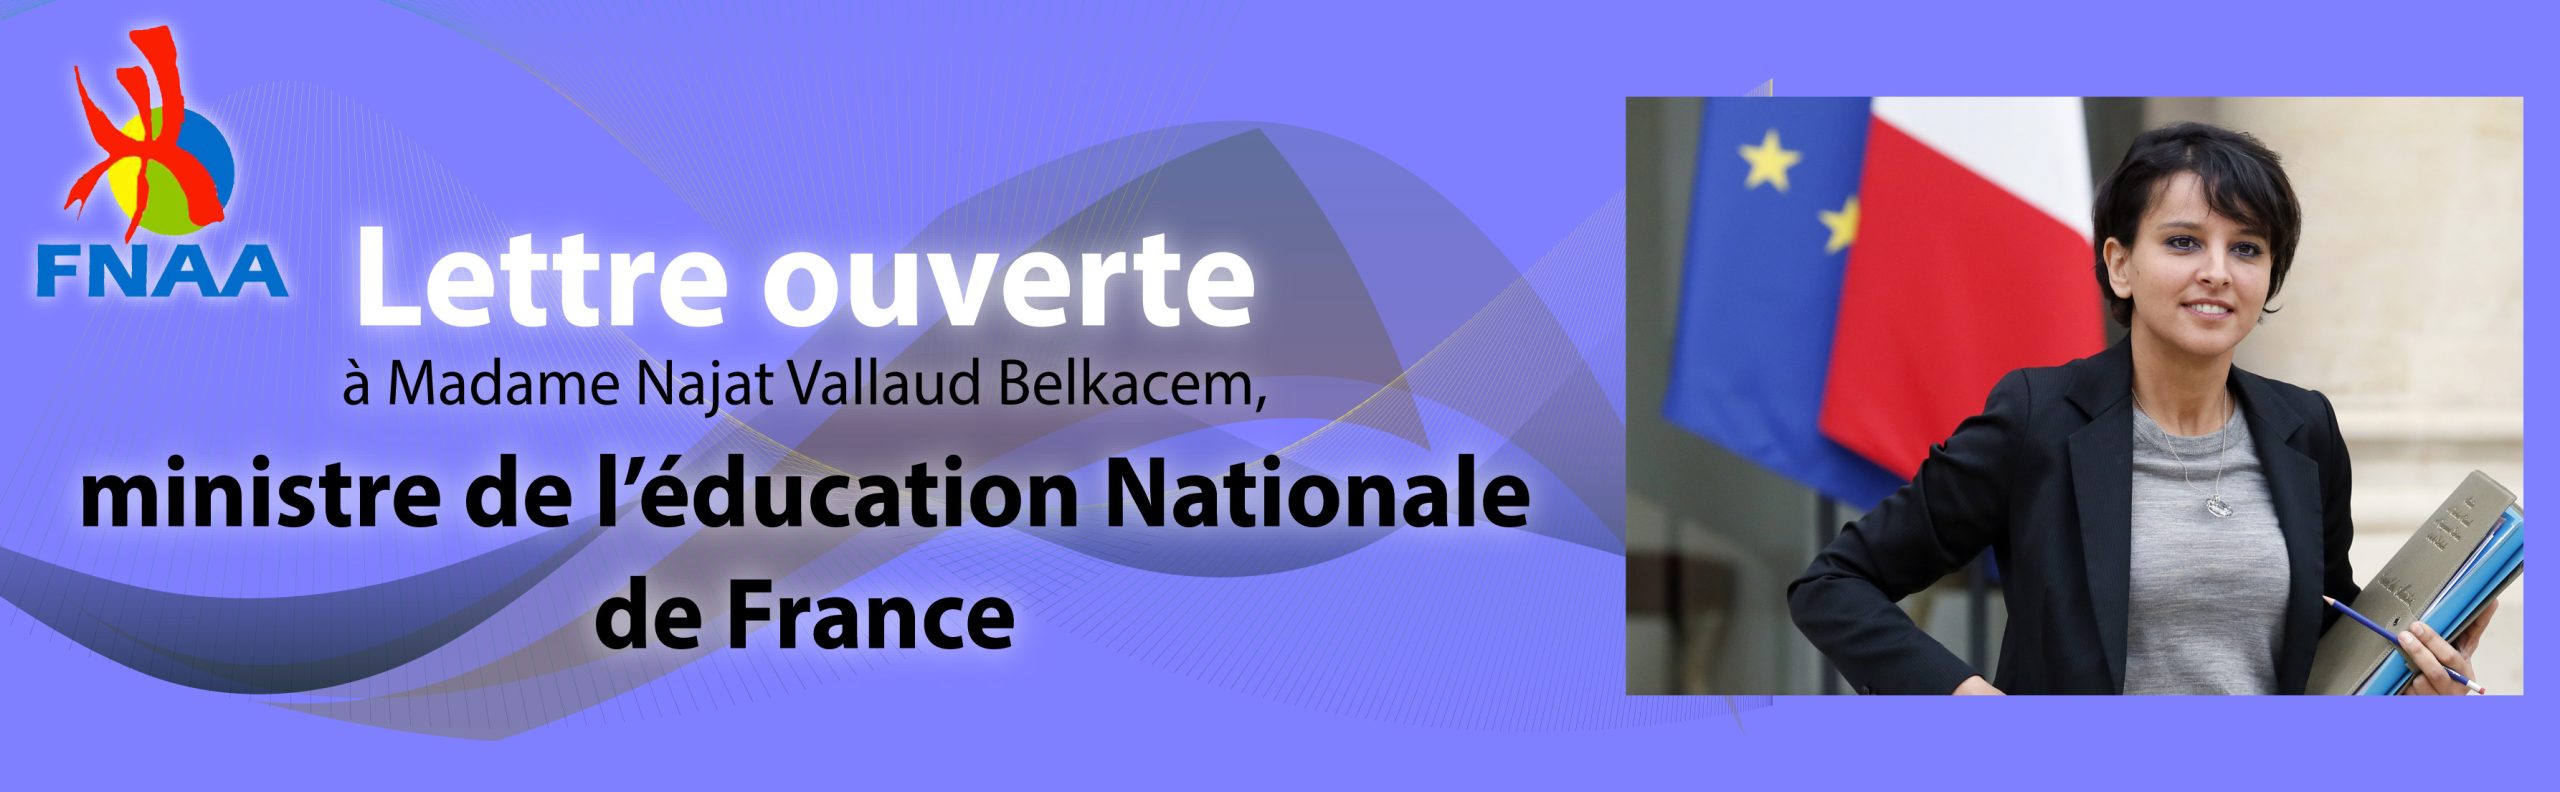 Lettre ouverte à Madame Najat Vallaud Belkacem, ministre de l’éducation Nationale de France